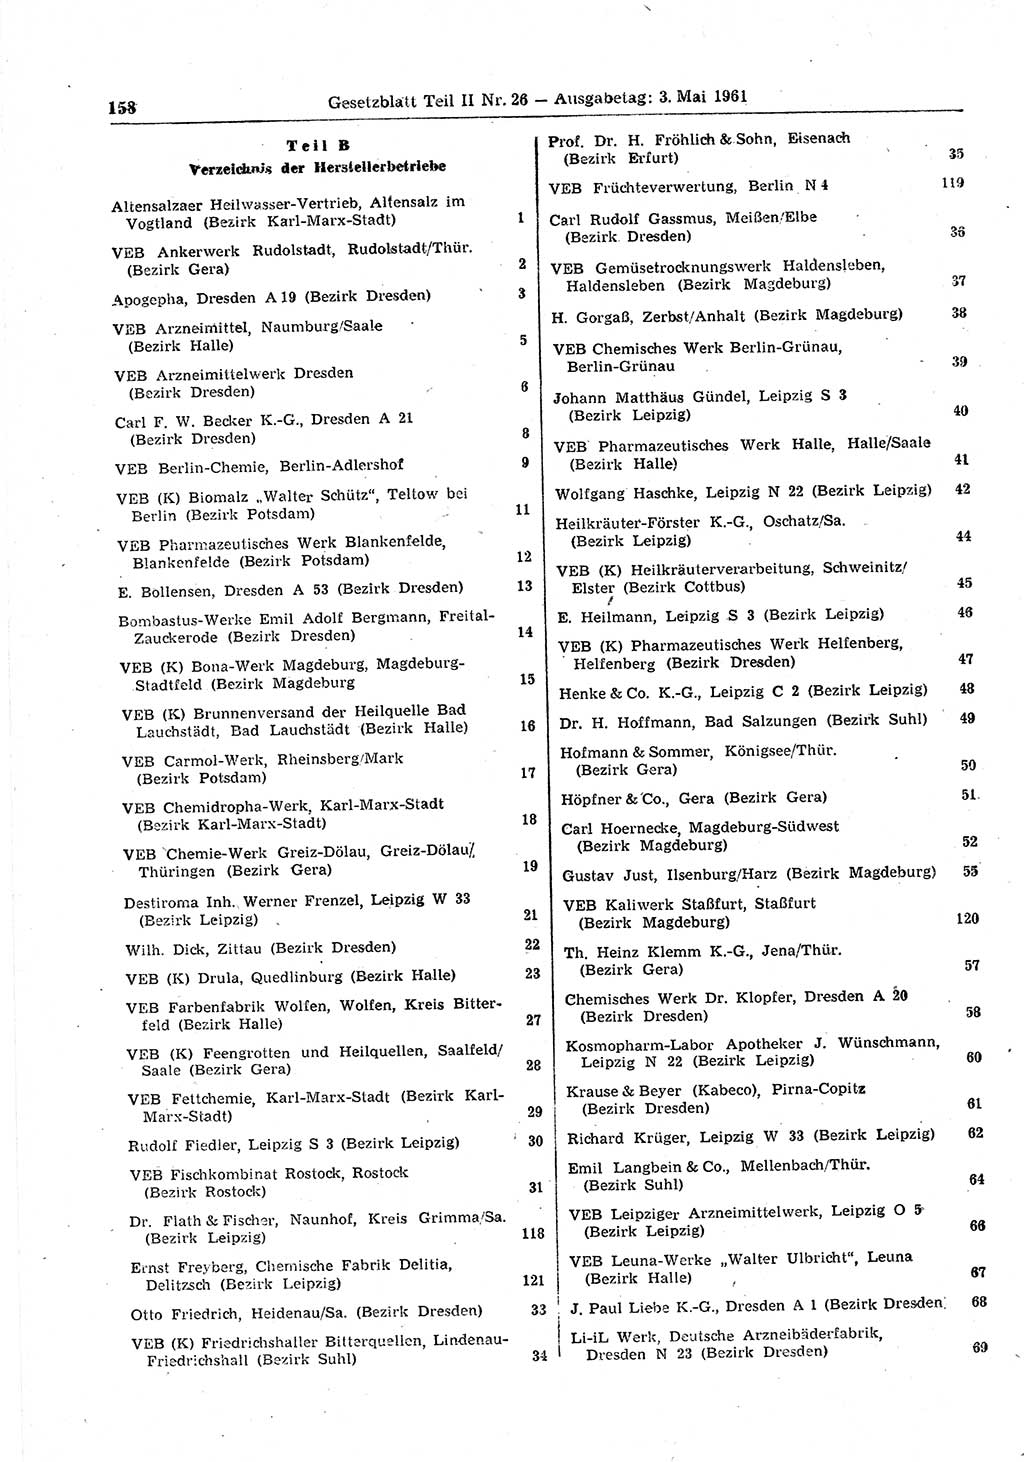 Gesetzblatt (GBl.) der Deutschen Demokratischen Republik (DDR) Teil ⅠⅠ 1961, Seite 158 (GBl. DDR ⅠⅠ 1961, S. 158)